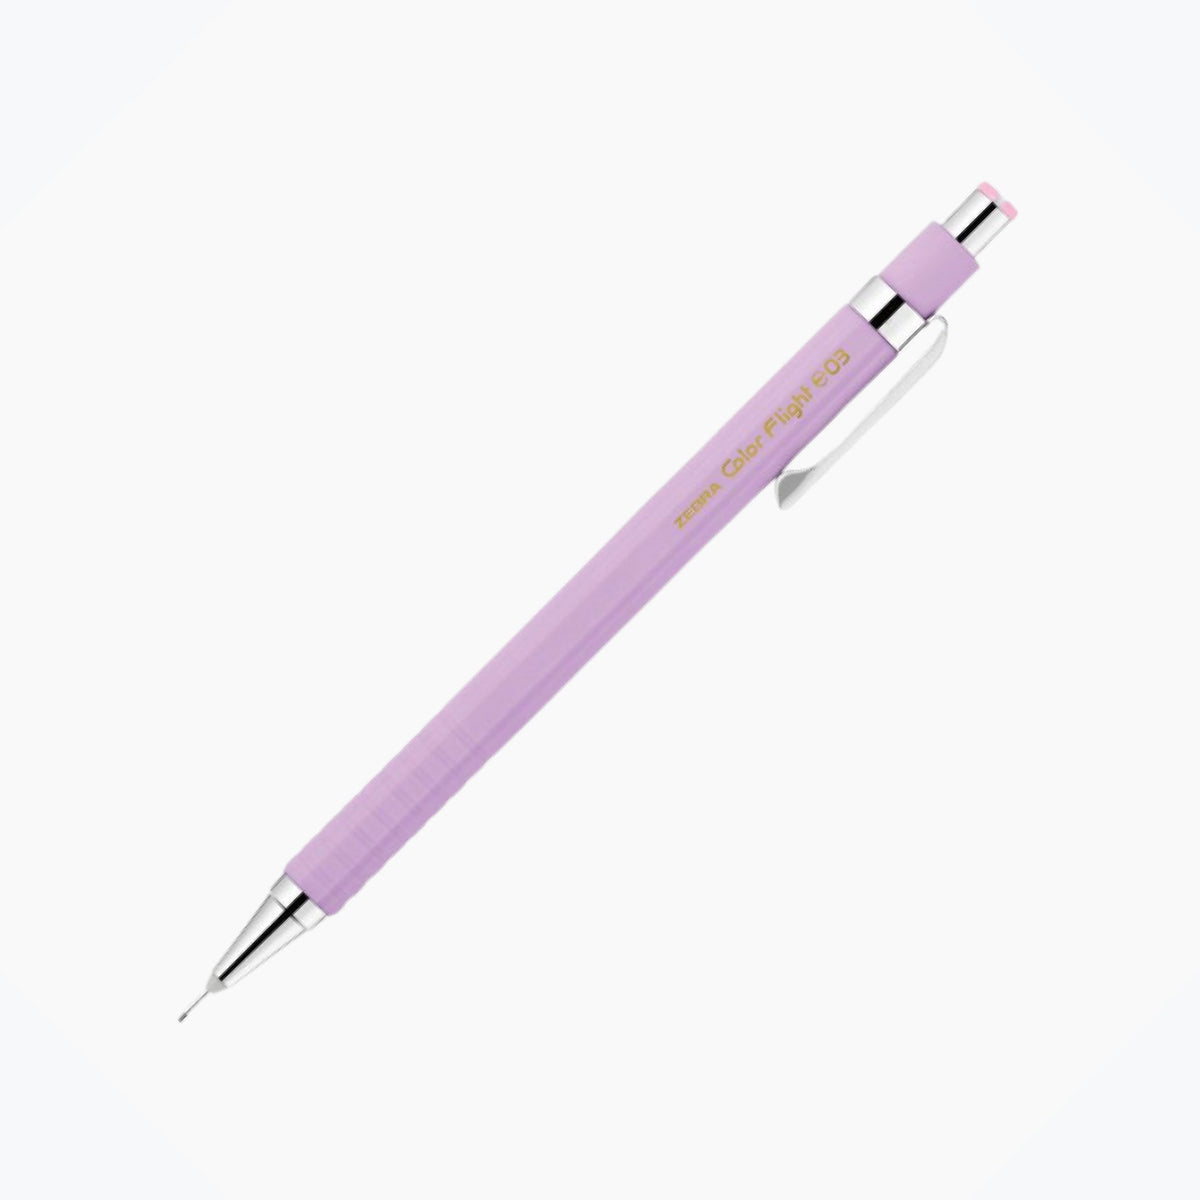 Zebra - Mechanical Pencil - Color Flight Pastel - 0.3mm - Violet <Outgoing>